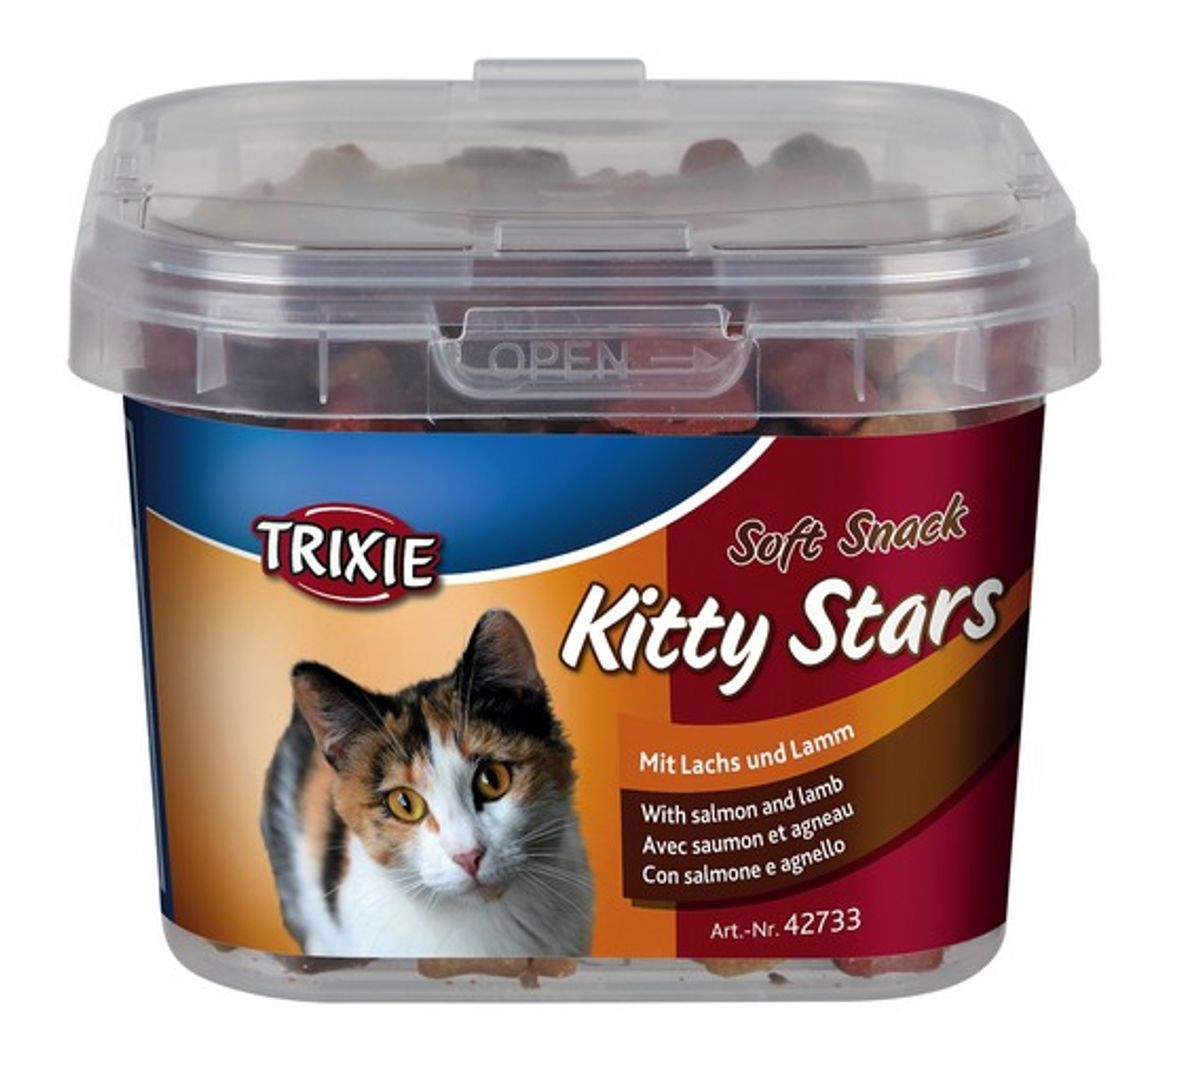 Kitty Stars Soft Snack - Trixie